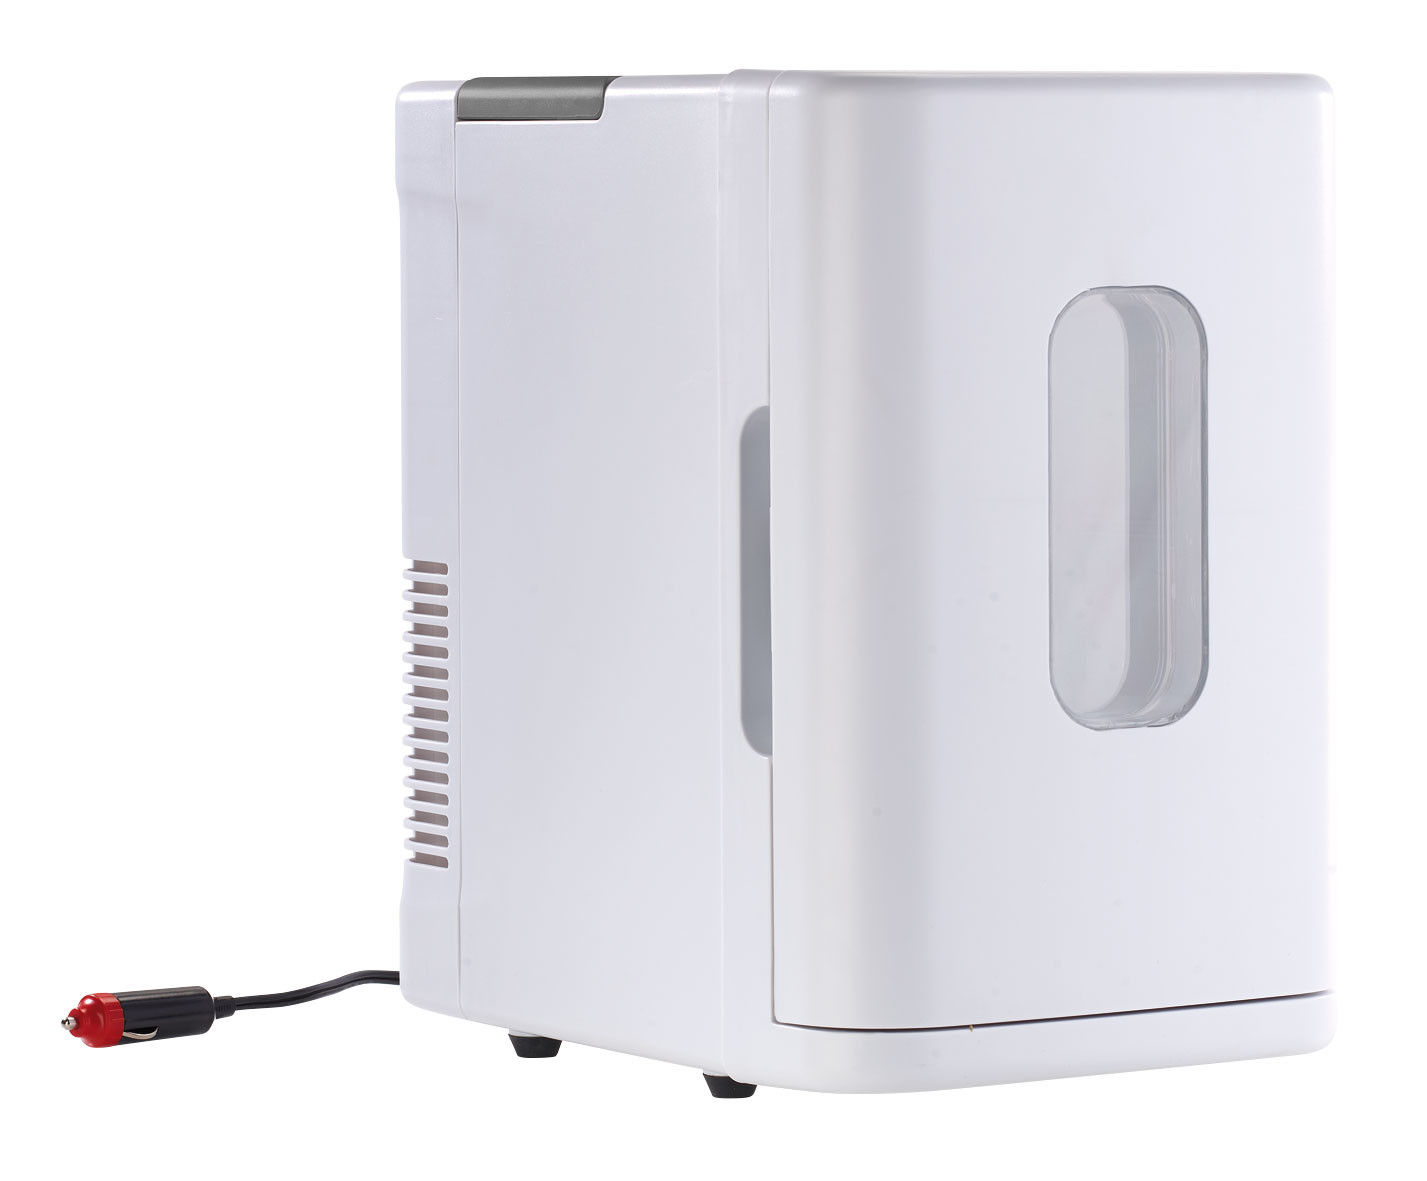 MODEZVOUS - Petit Frigo de Chambre, Refrigerateur Portable 12V/220V  Fonction Chaud Froid